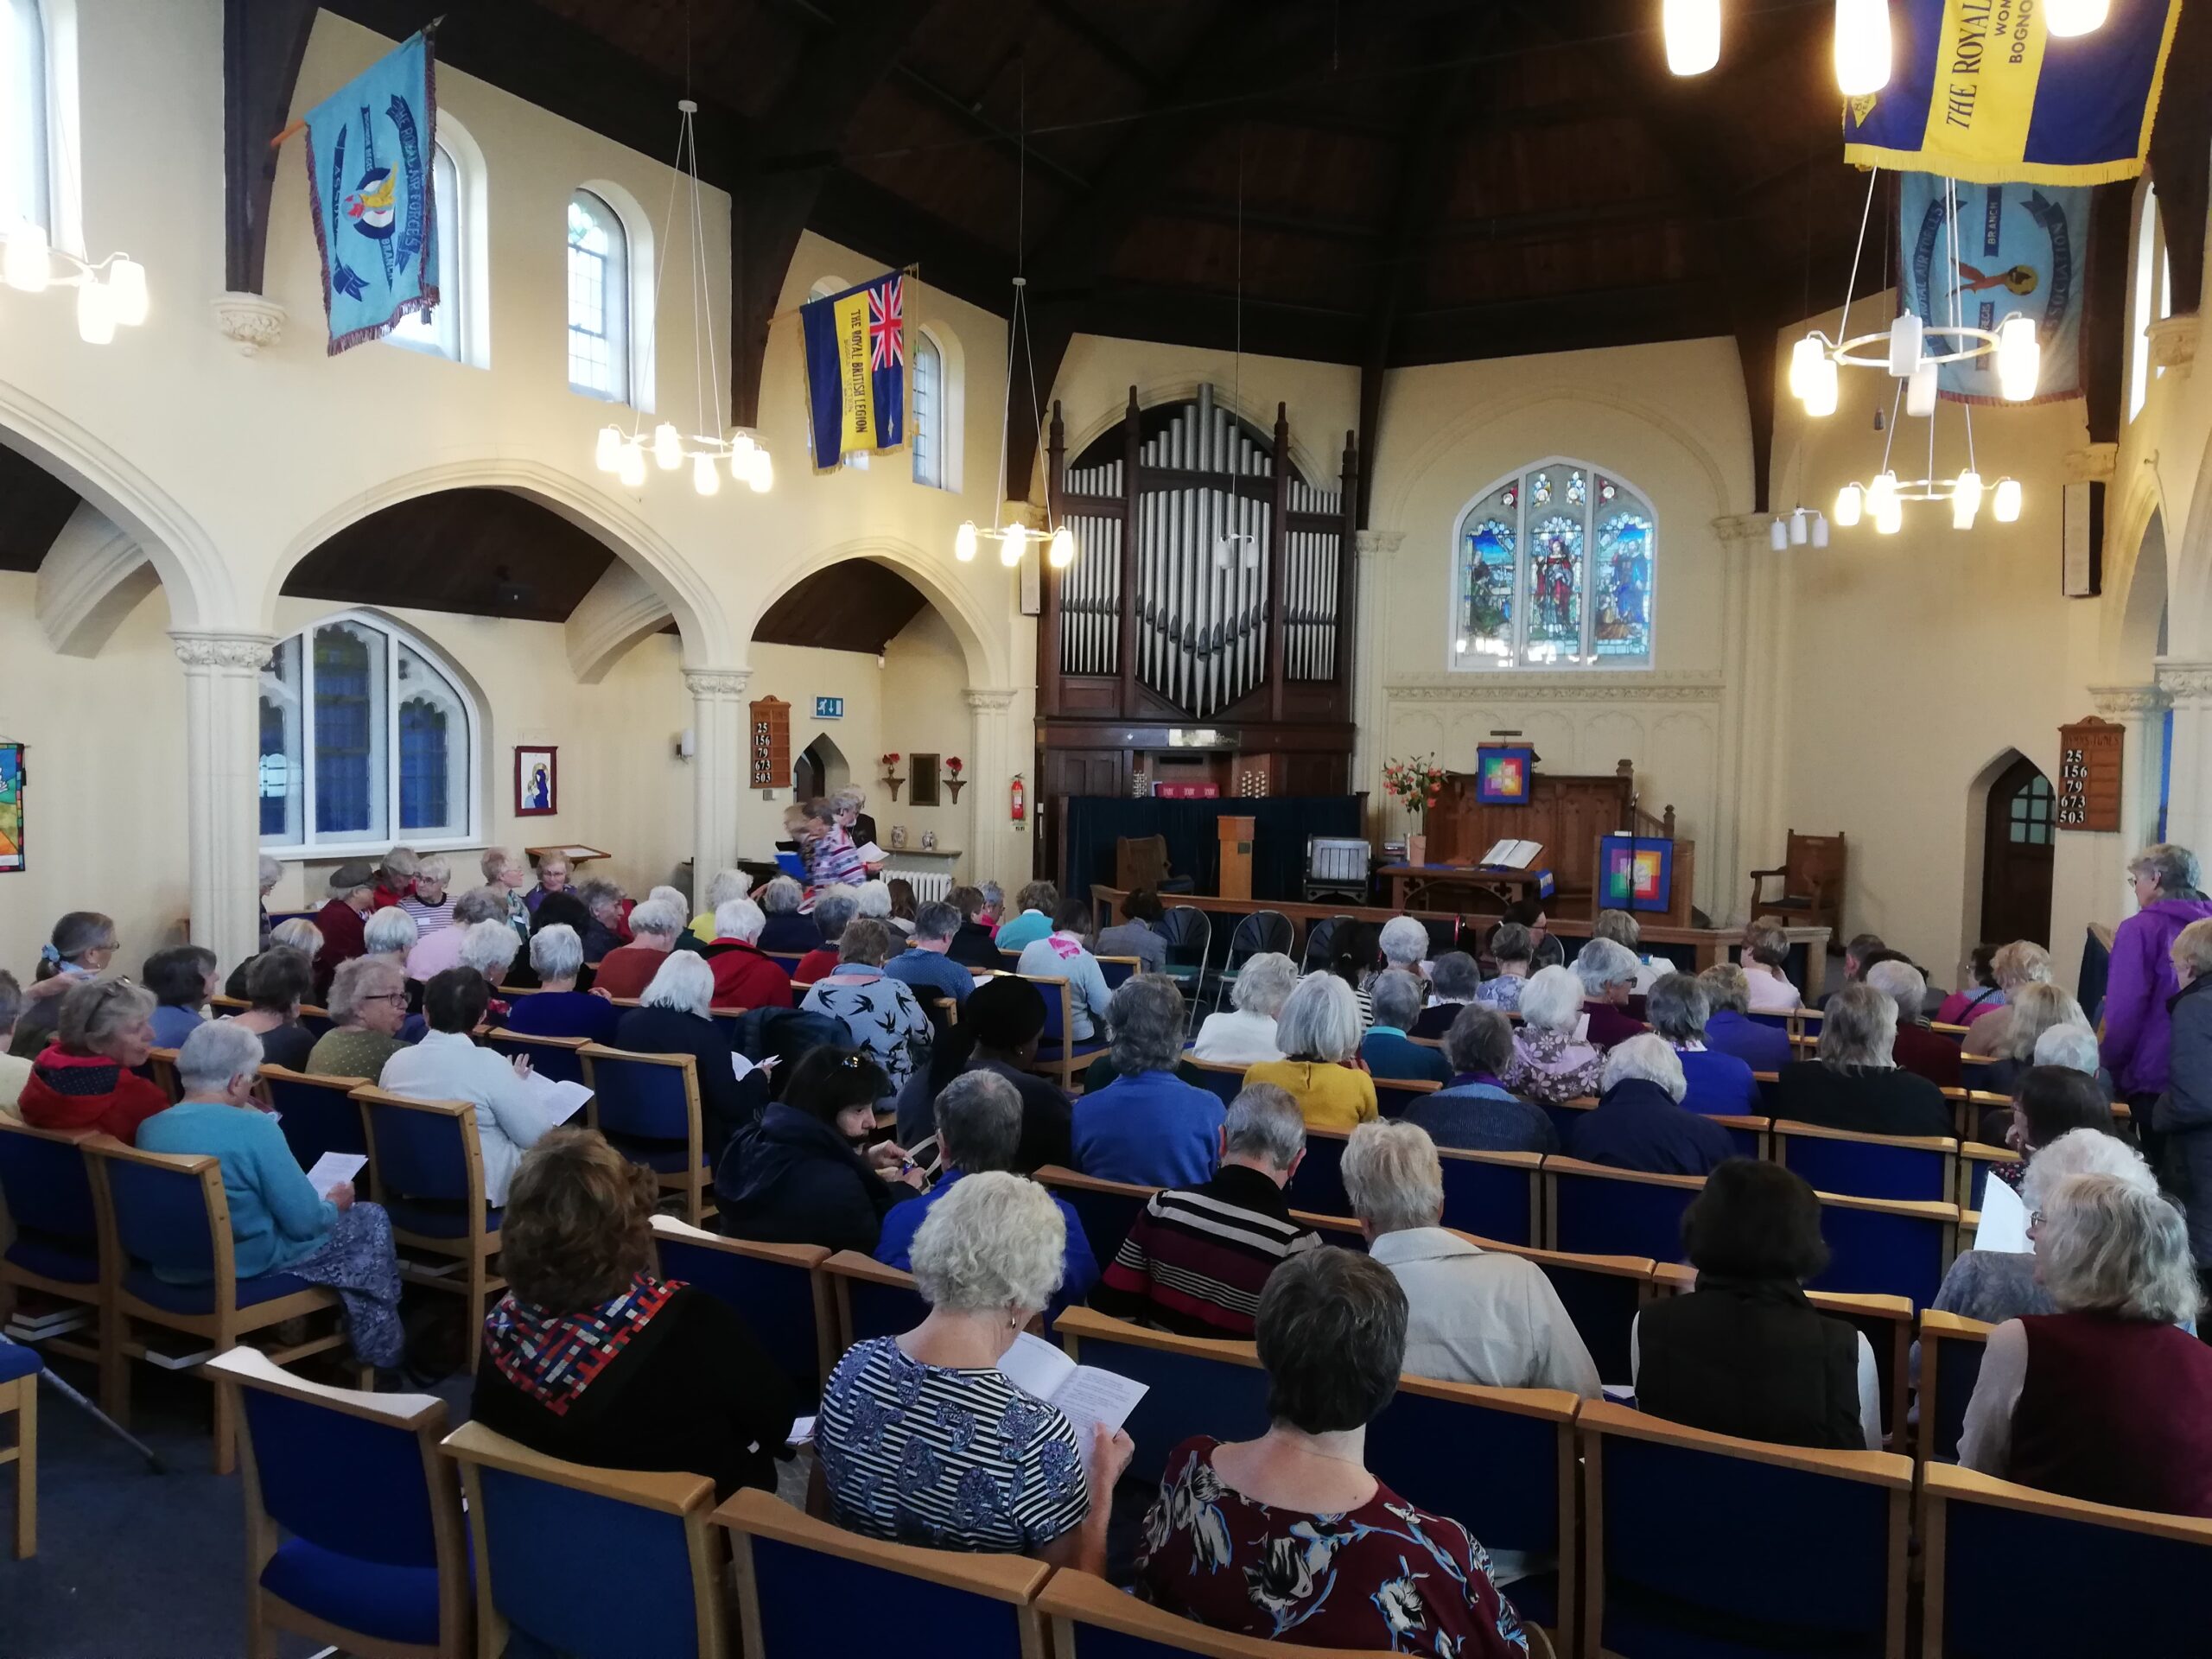 Worship at Bognor Regis Methodist